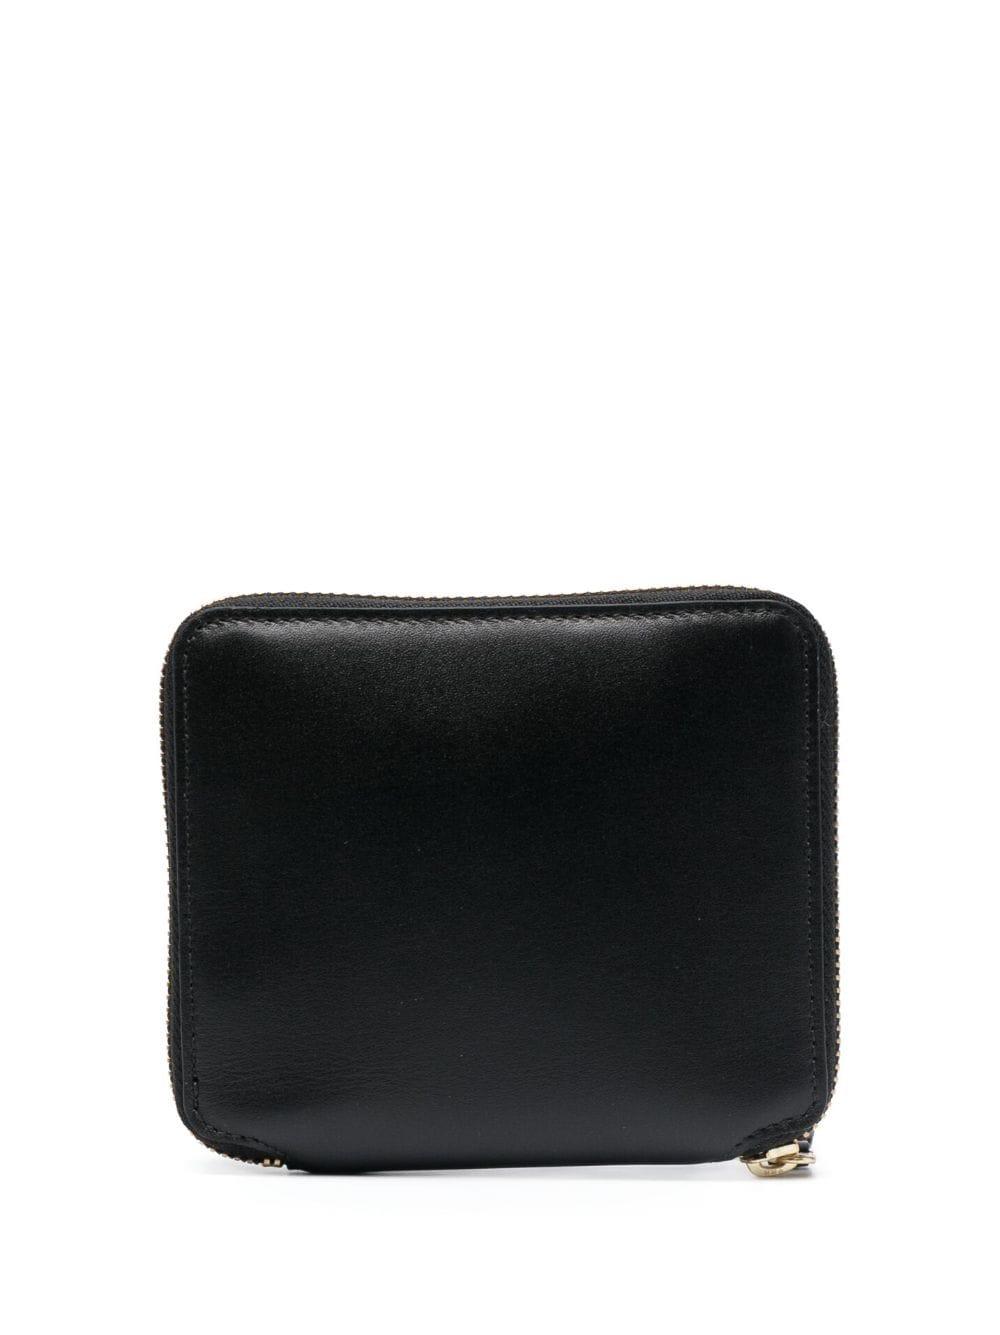 Comme Des Garçons Wallet check-print leather wallet - Black